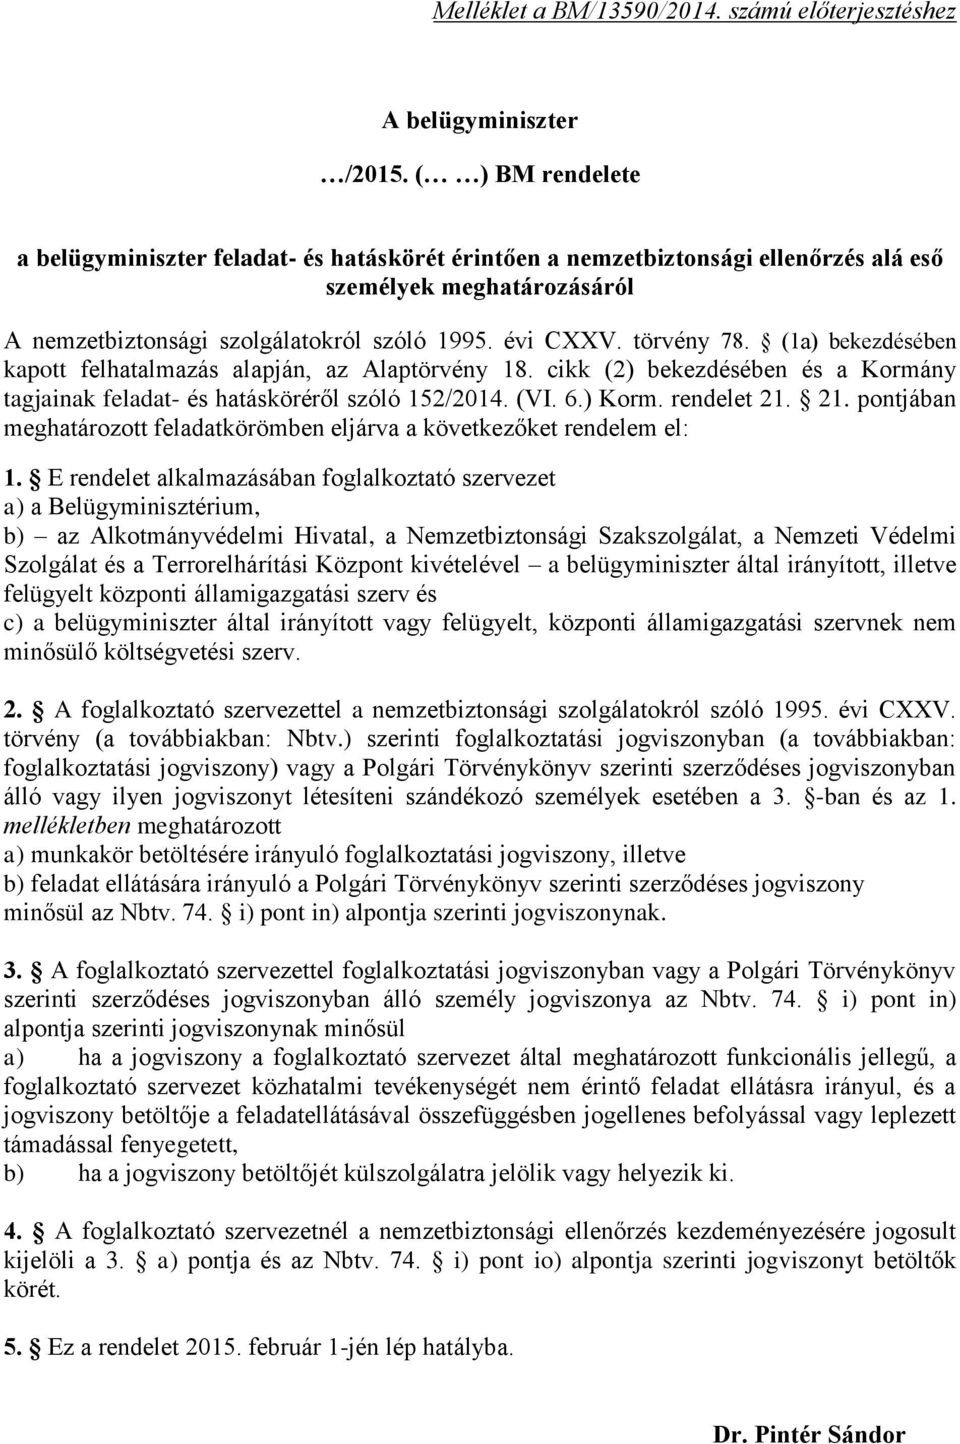 (1a) bekezdésében kapott felhatalmazás alapján, az Alaptörvény 18. cikk (2) bekezdésében és a Kormány tagjainak feladat- és hatásköréről szóló 152/2014. (VI. 6.) Korm. rendelet 21.